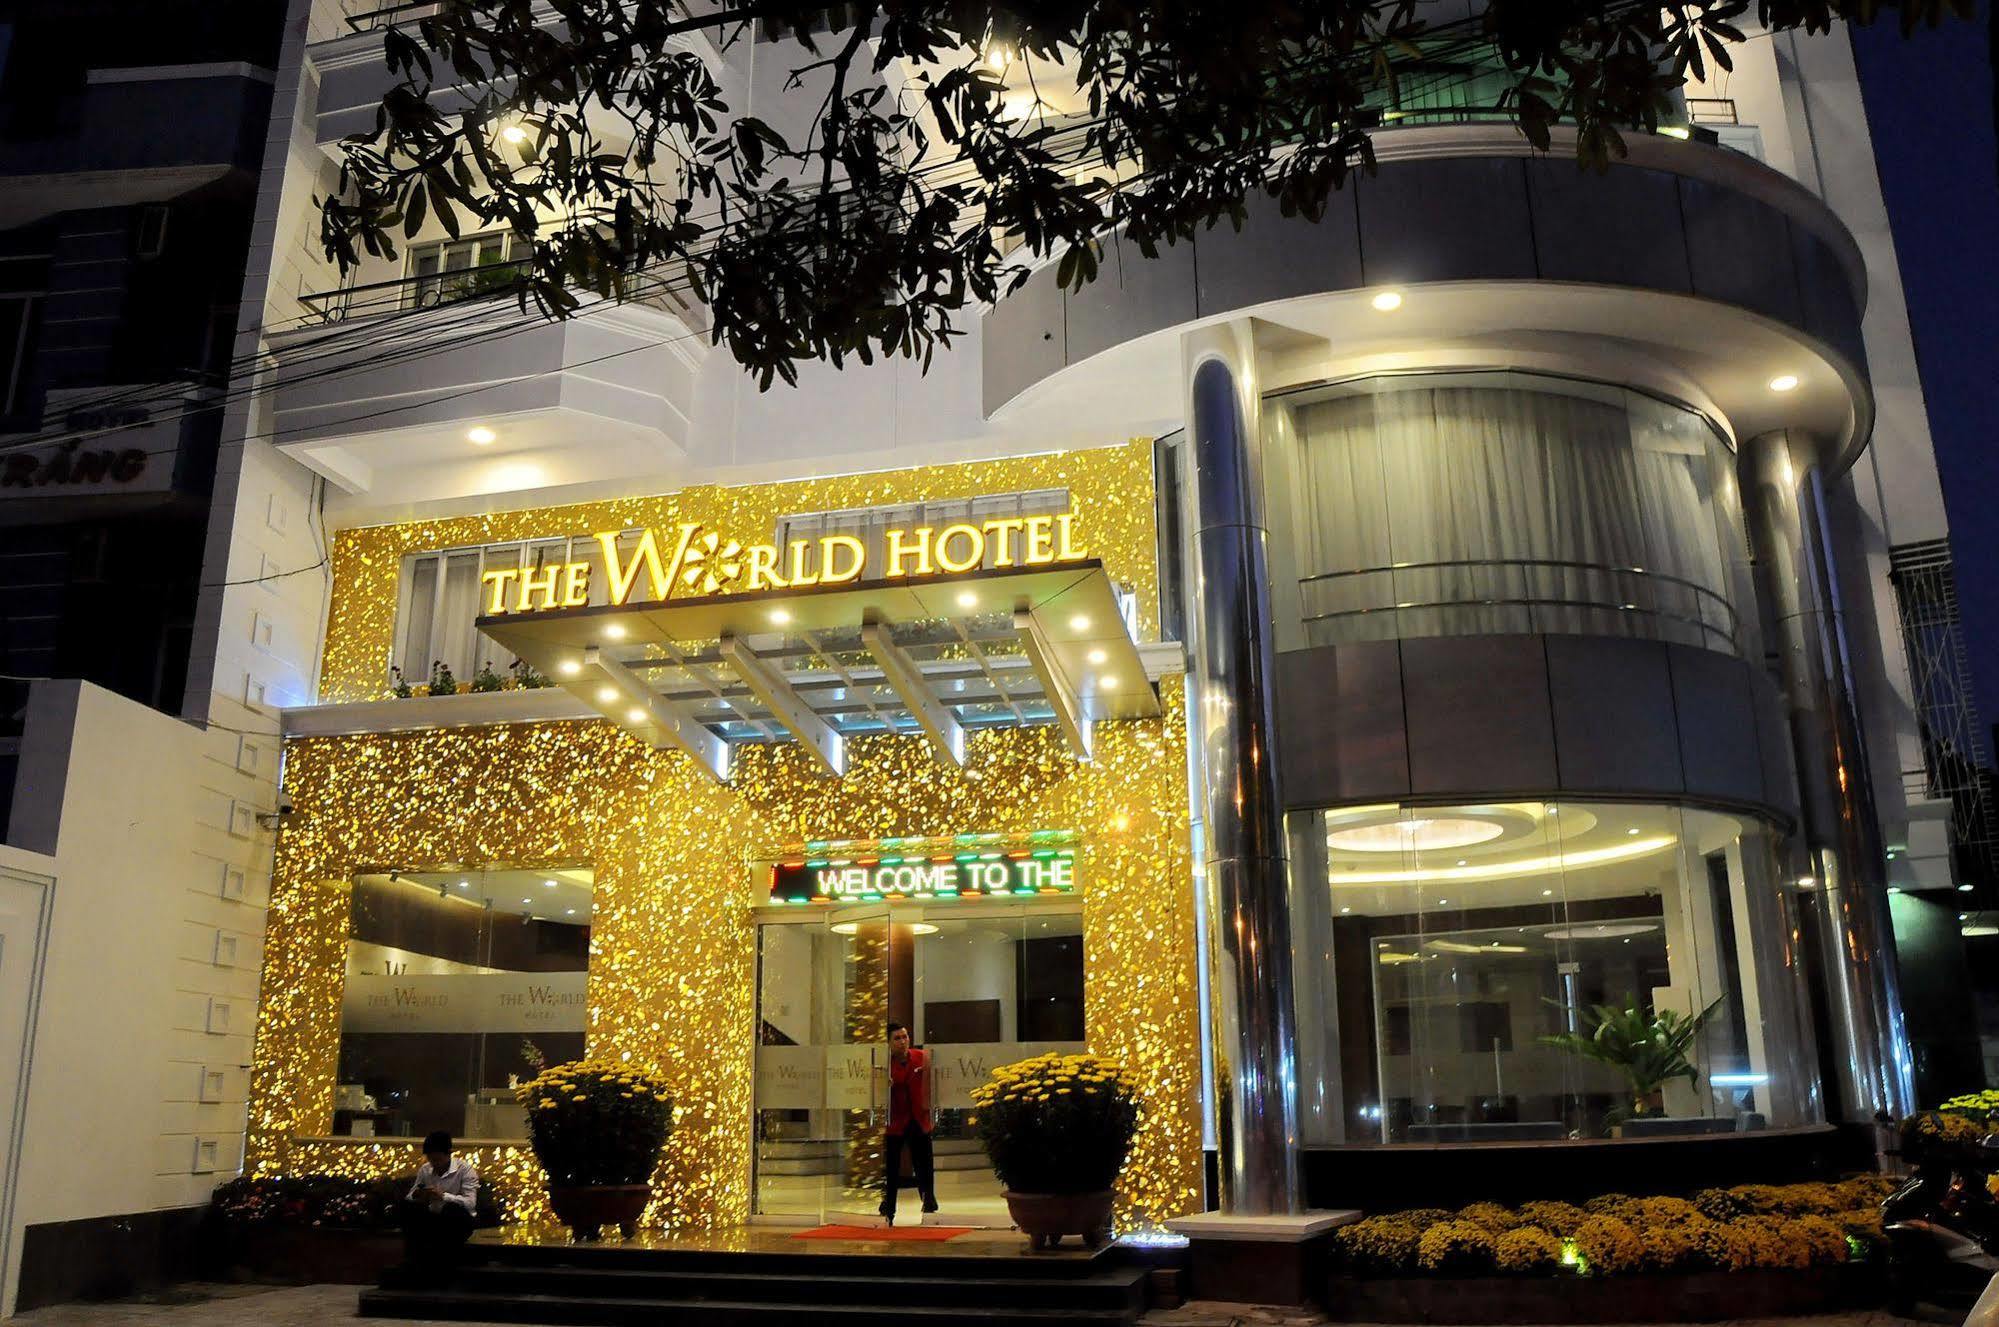 Camellia Nhatrang Hotel Nha Trang Kültér fotó